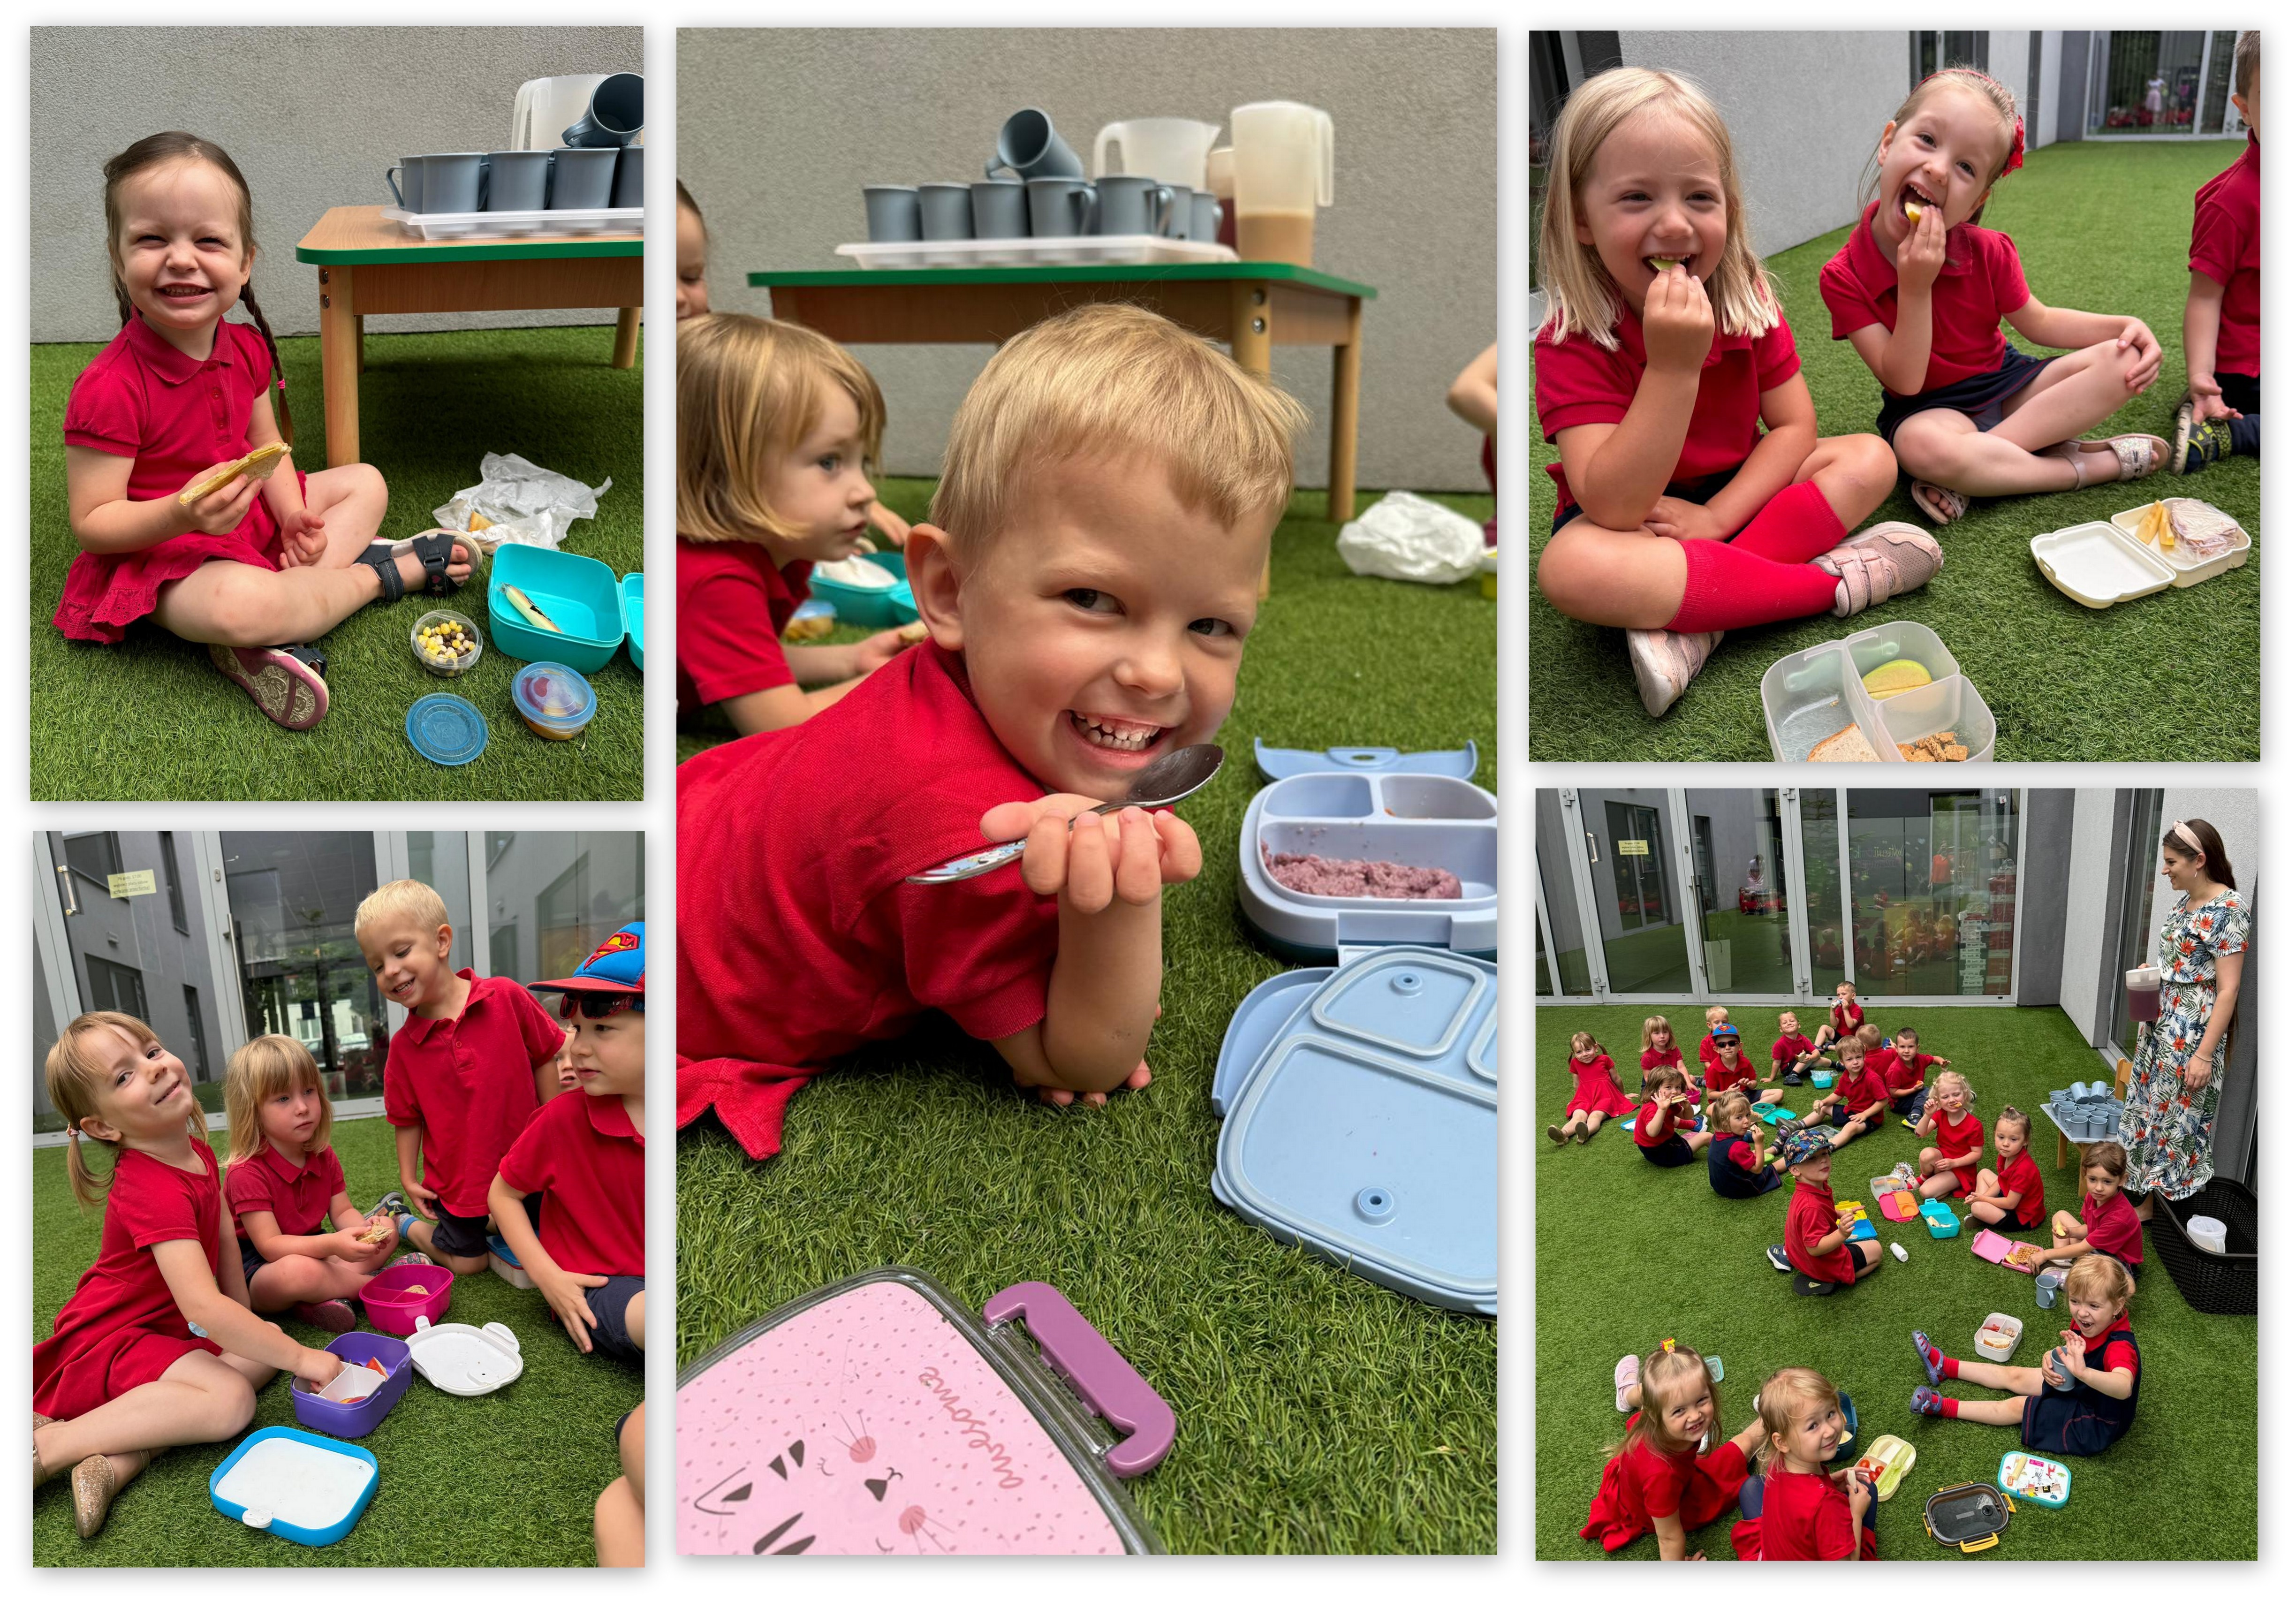 Maluszki z wielką radością spędzały czerwcowy czas na podwórku, bawiąc się i ciesząc swoją obecnością. Zjadły też śniadanko w formie pikniku - to świetna alternatywa na wakacyjny czas z rodziną :) 